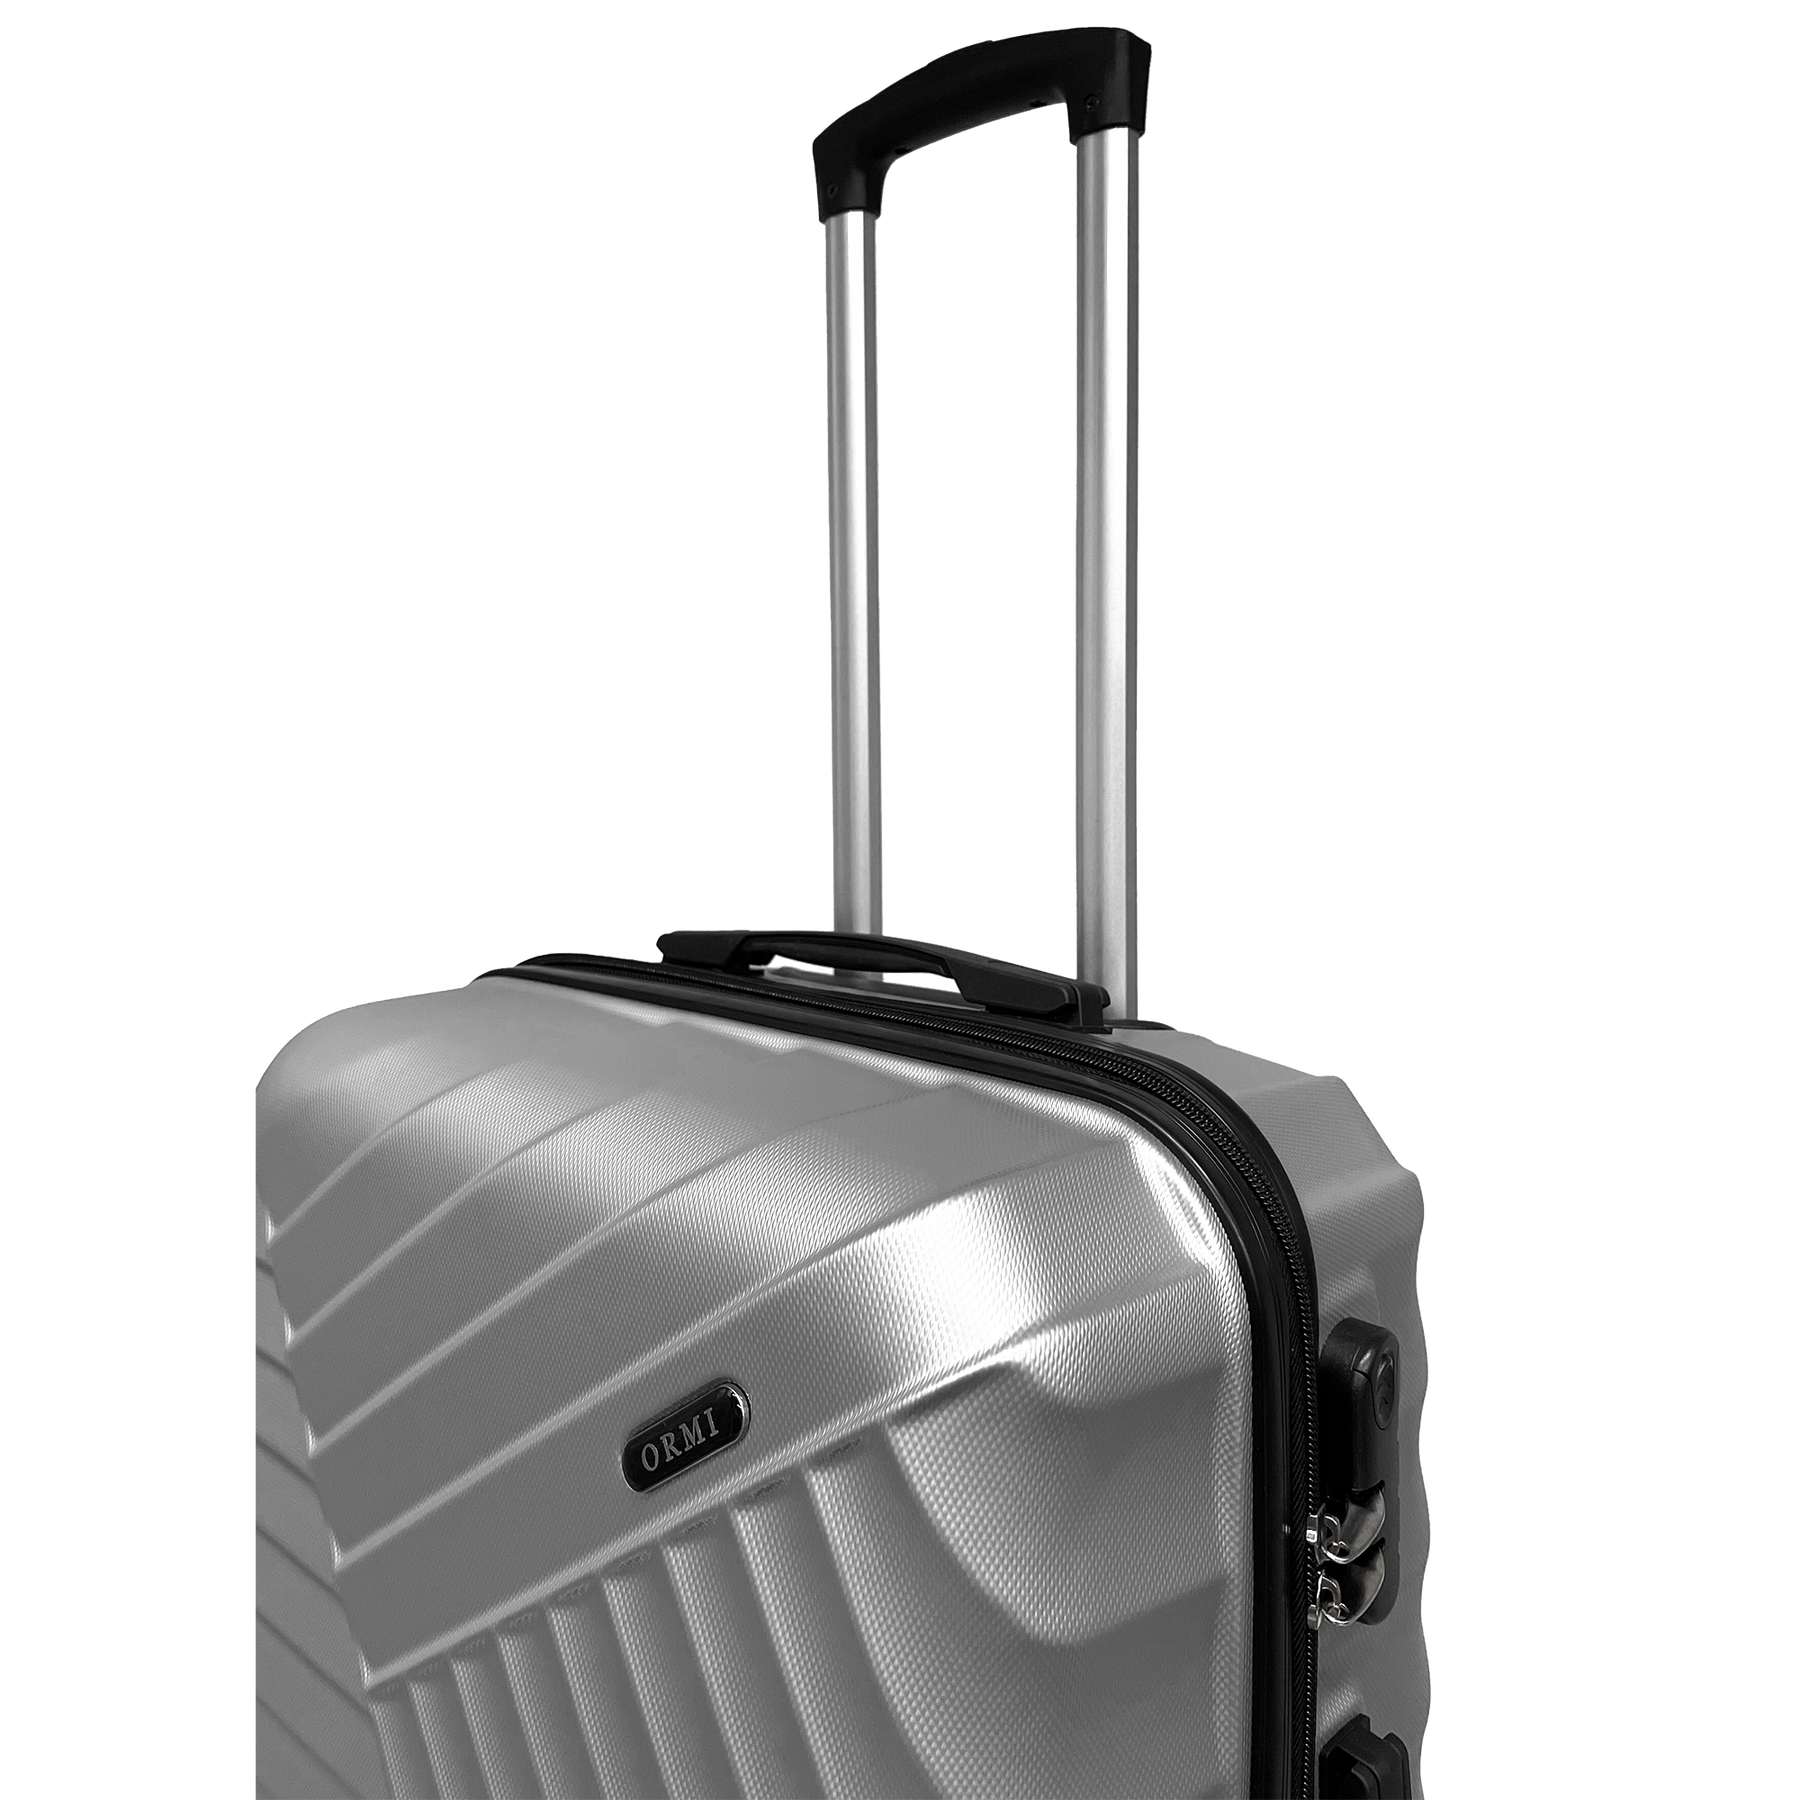 STSHLine közepes méretű bőrönd erős ABS anyagból, méretei 65x43x26 cm, 4 dupla 360°-os kerékkel - könnyű és strapabíró